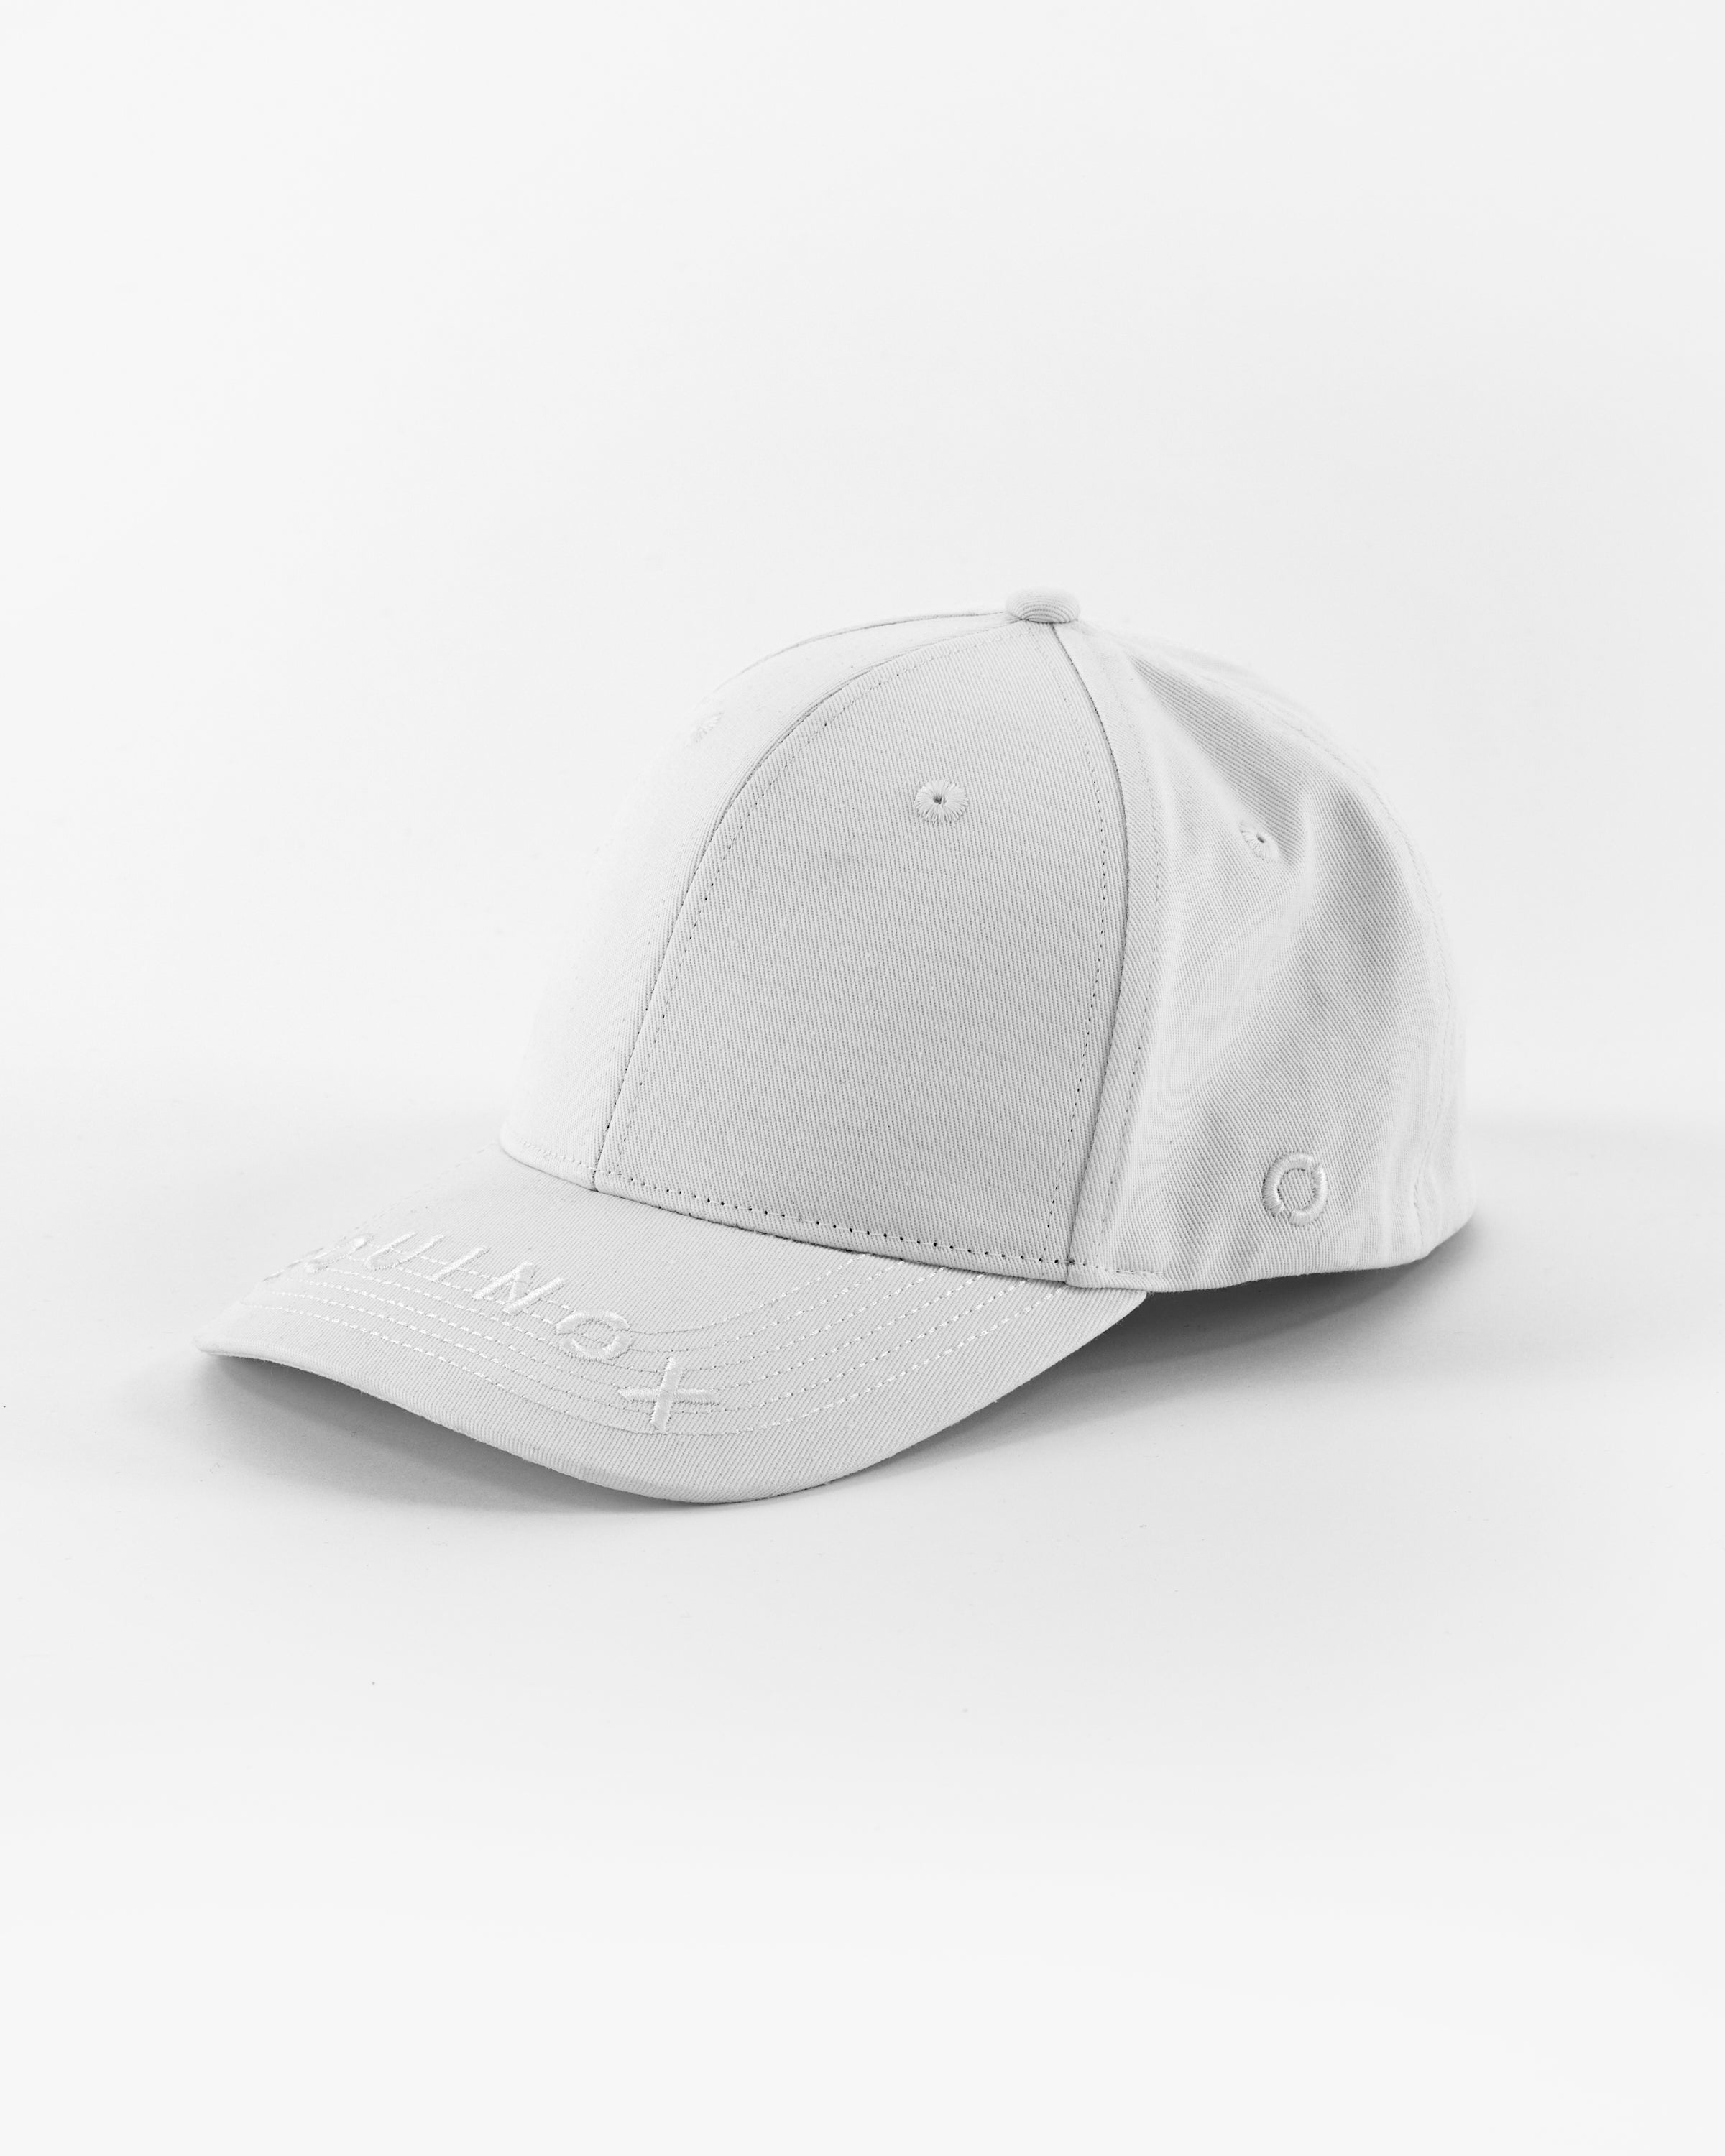 The Flex Equinox at Shop Logo Equinox Hat Visor Fit –